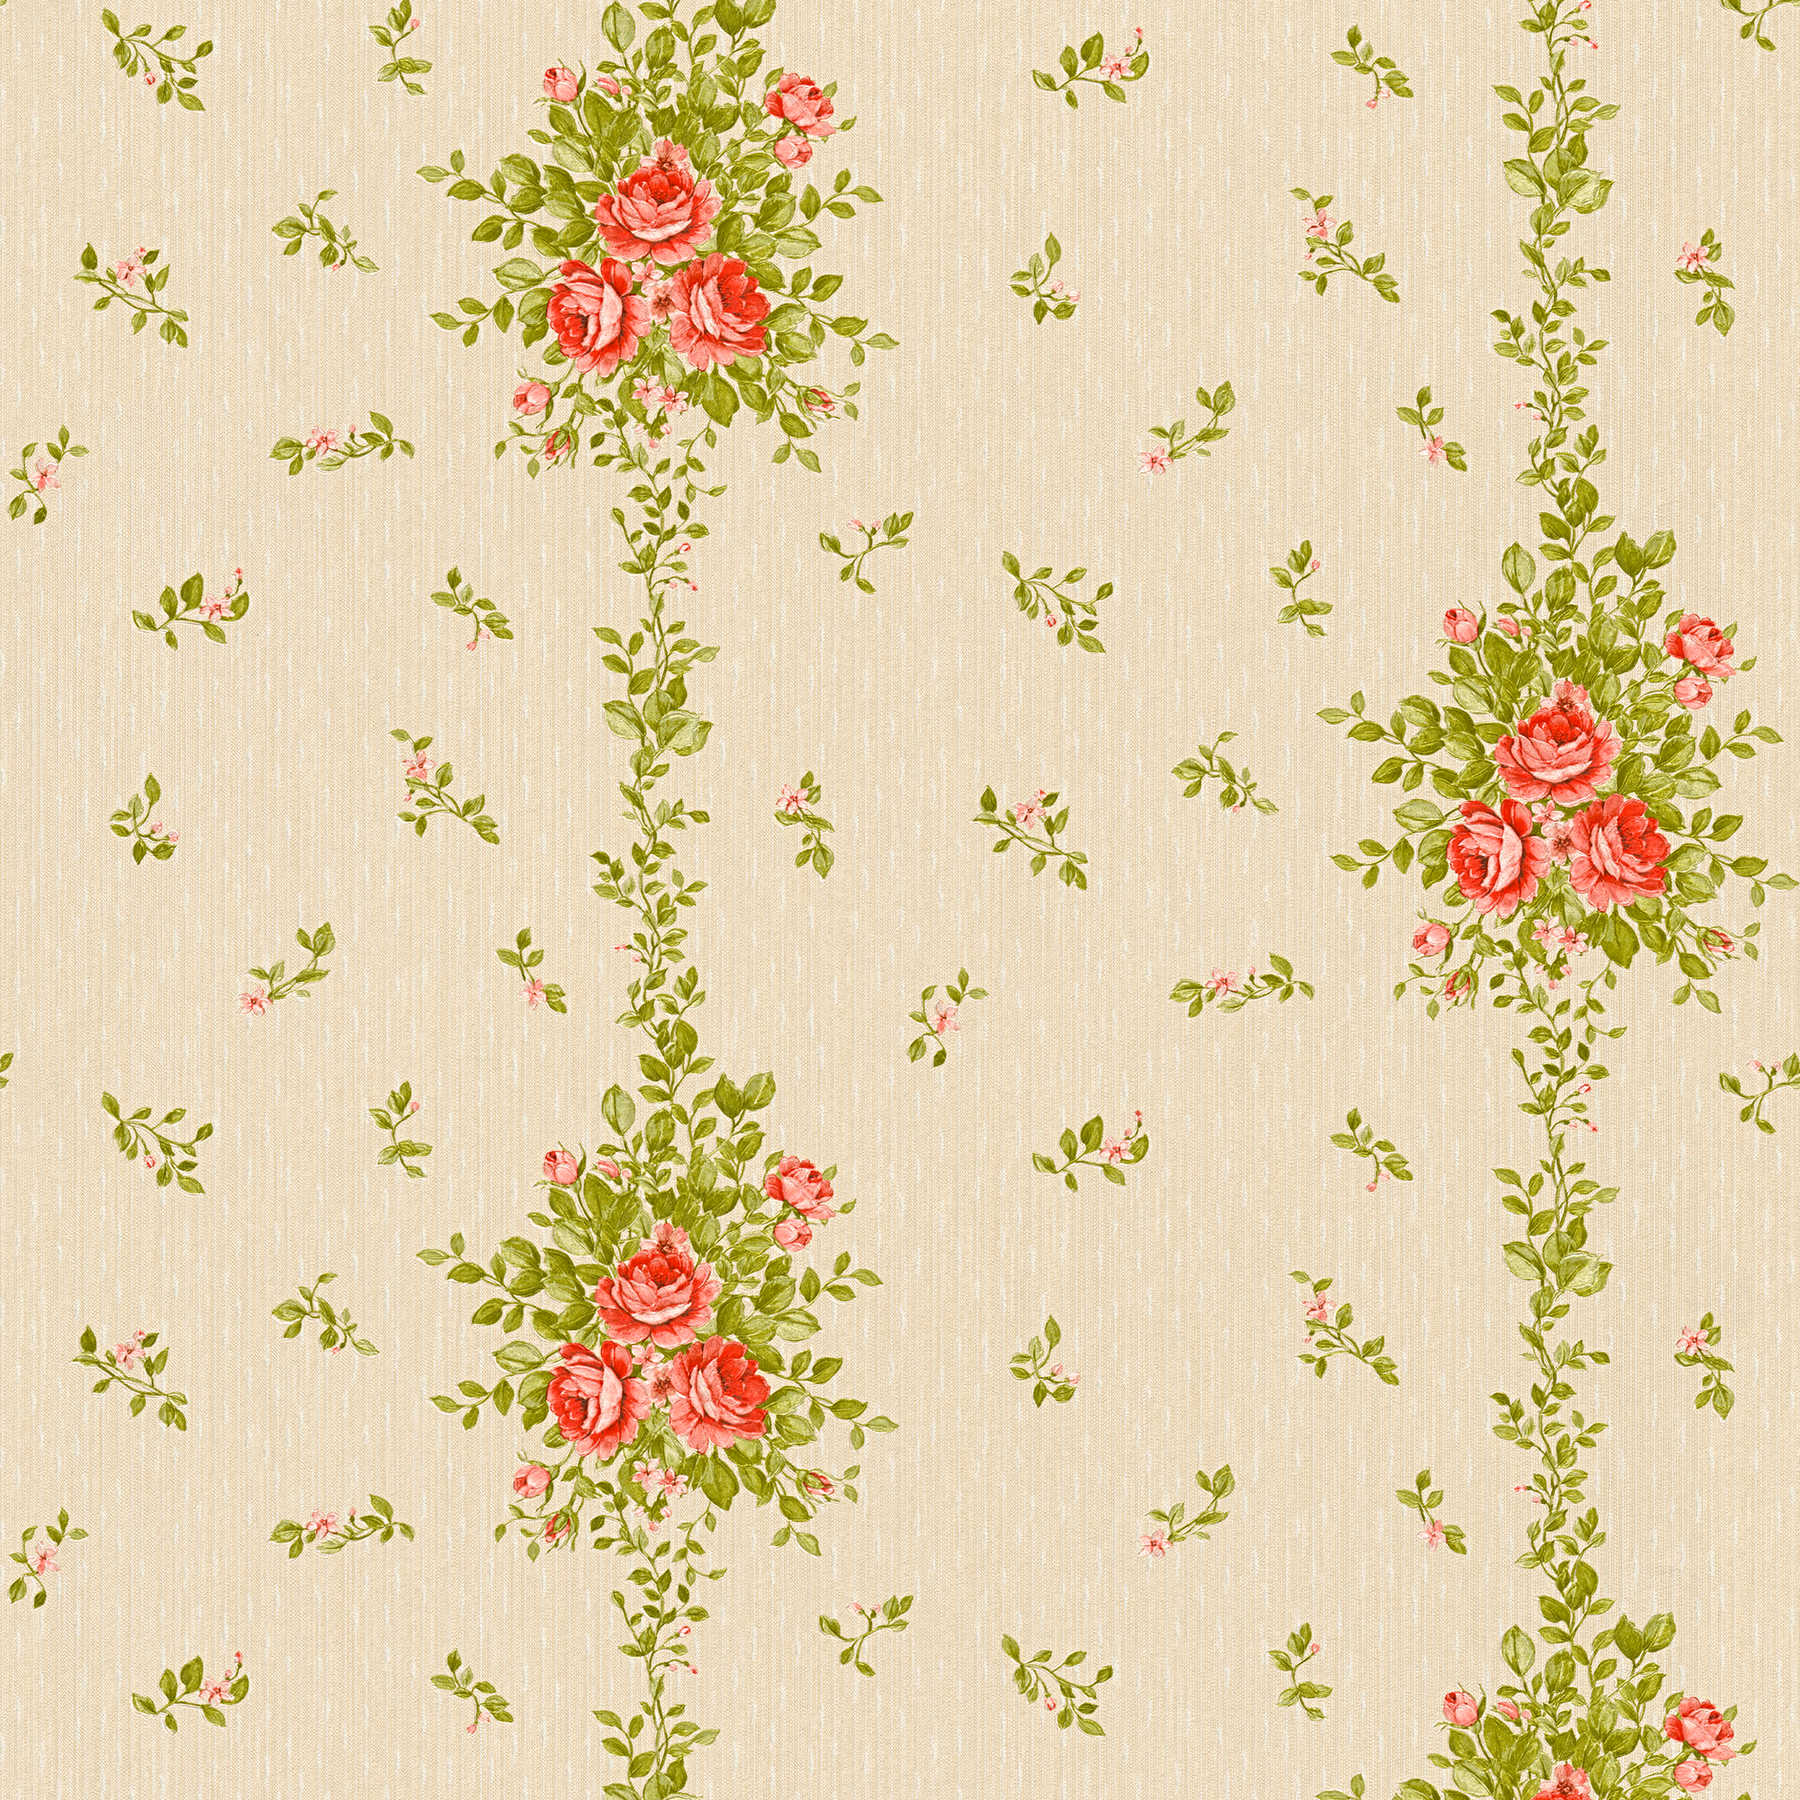         Floral wallpaper roses pattern & stripes effect - beige
    